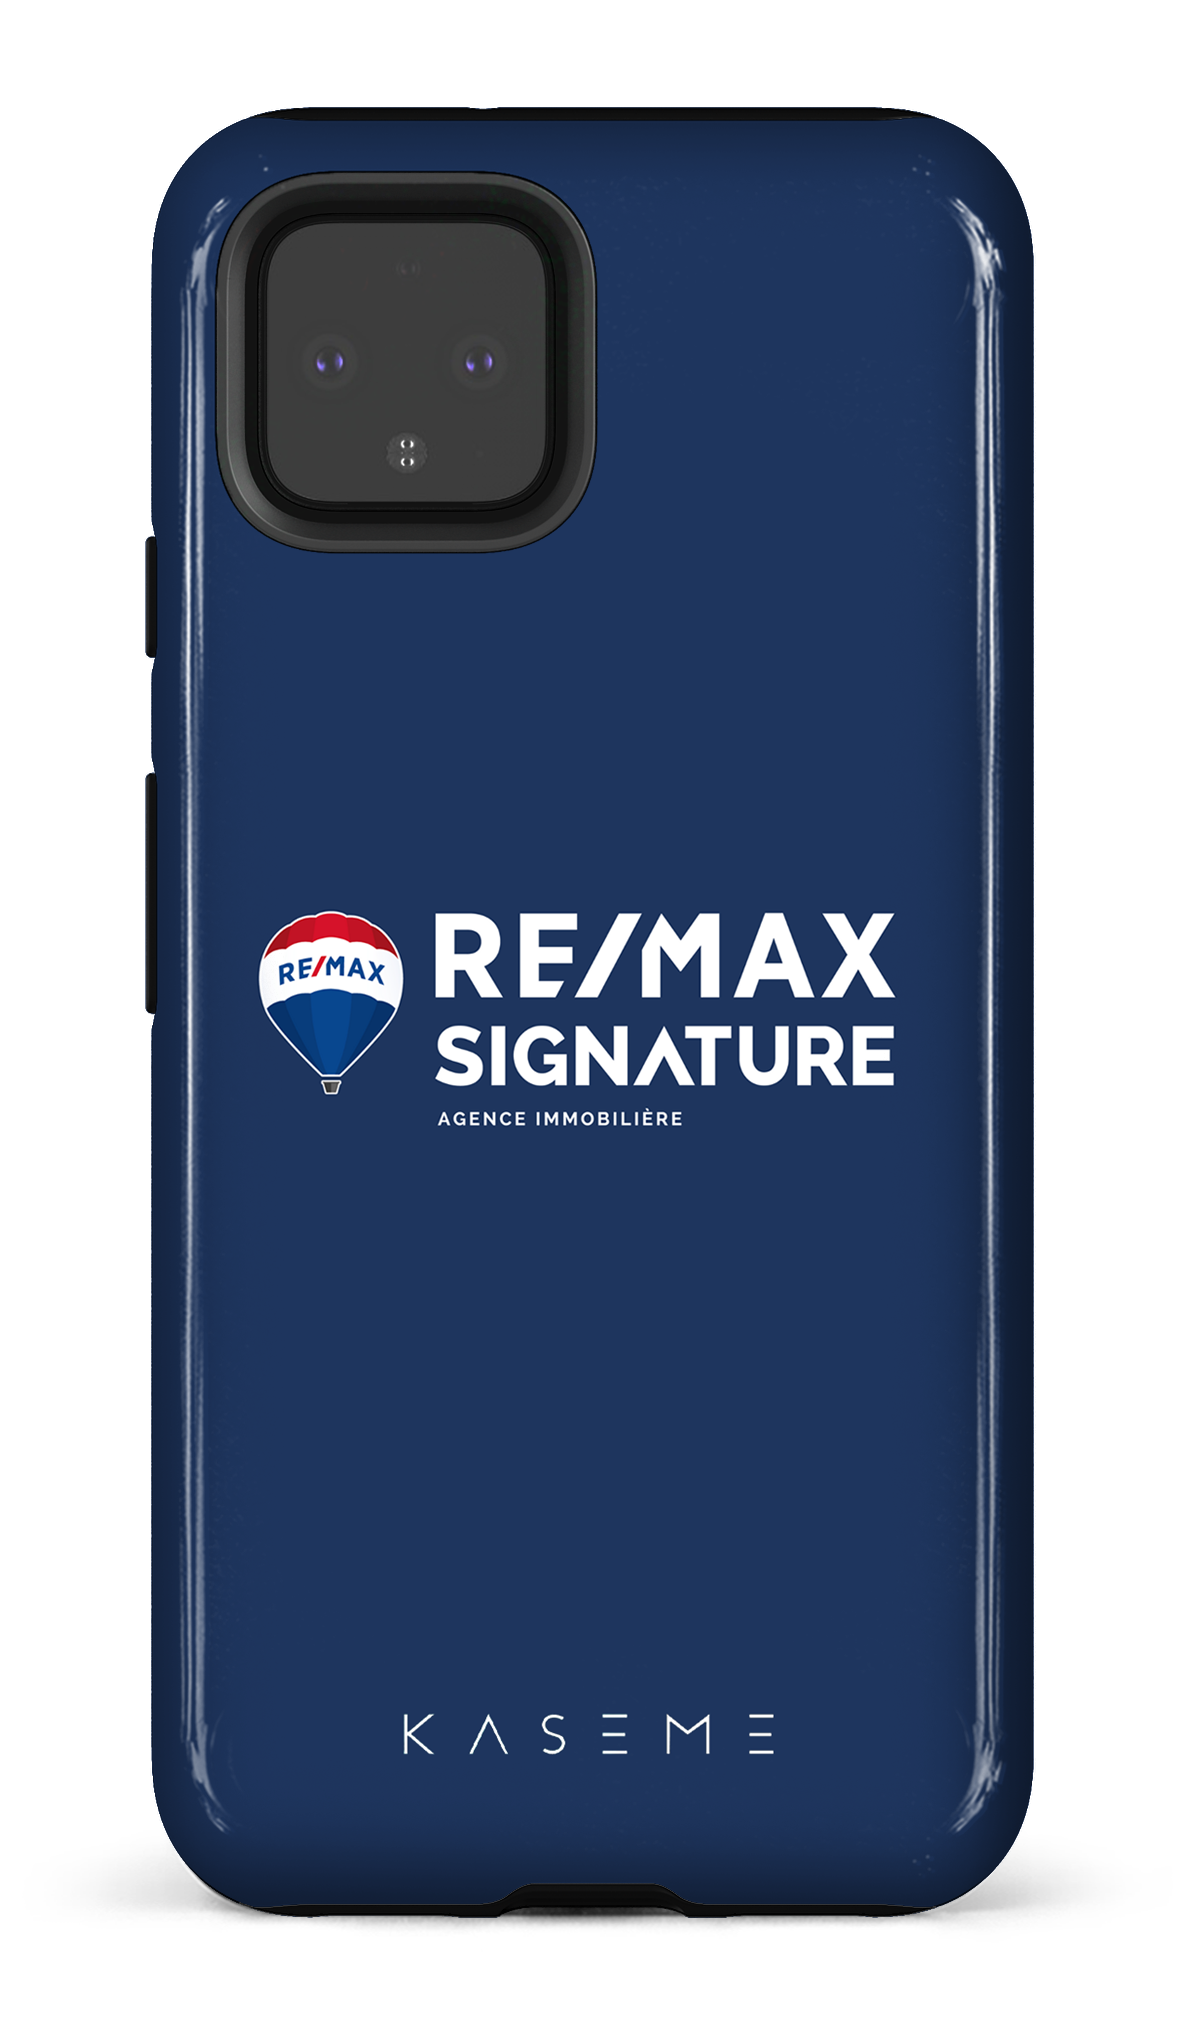 Remax Signature Bleu - Google Pixel 4